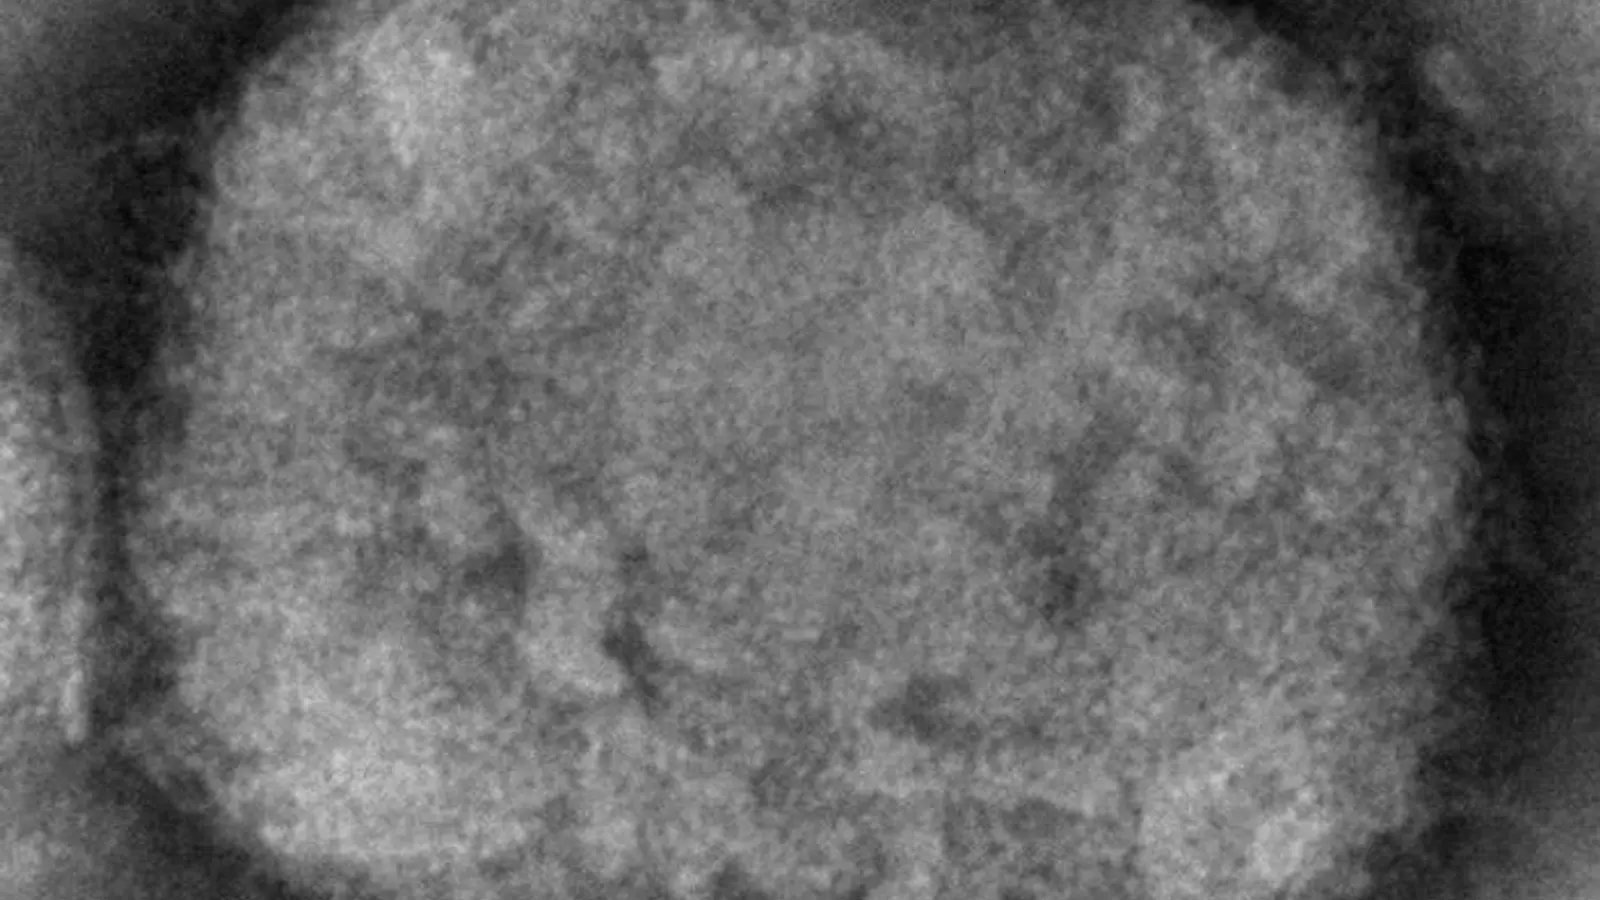 Diese elektronenmikroskopische Aufnahme zeigt ein Affenpockenvirus. (Foto: Cynthia S. Goldsmith/CDC via AP/dpa)